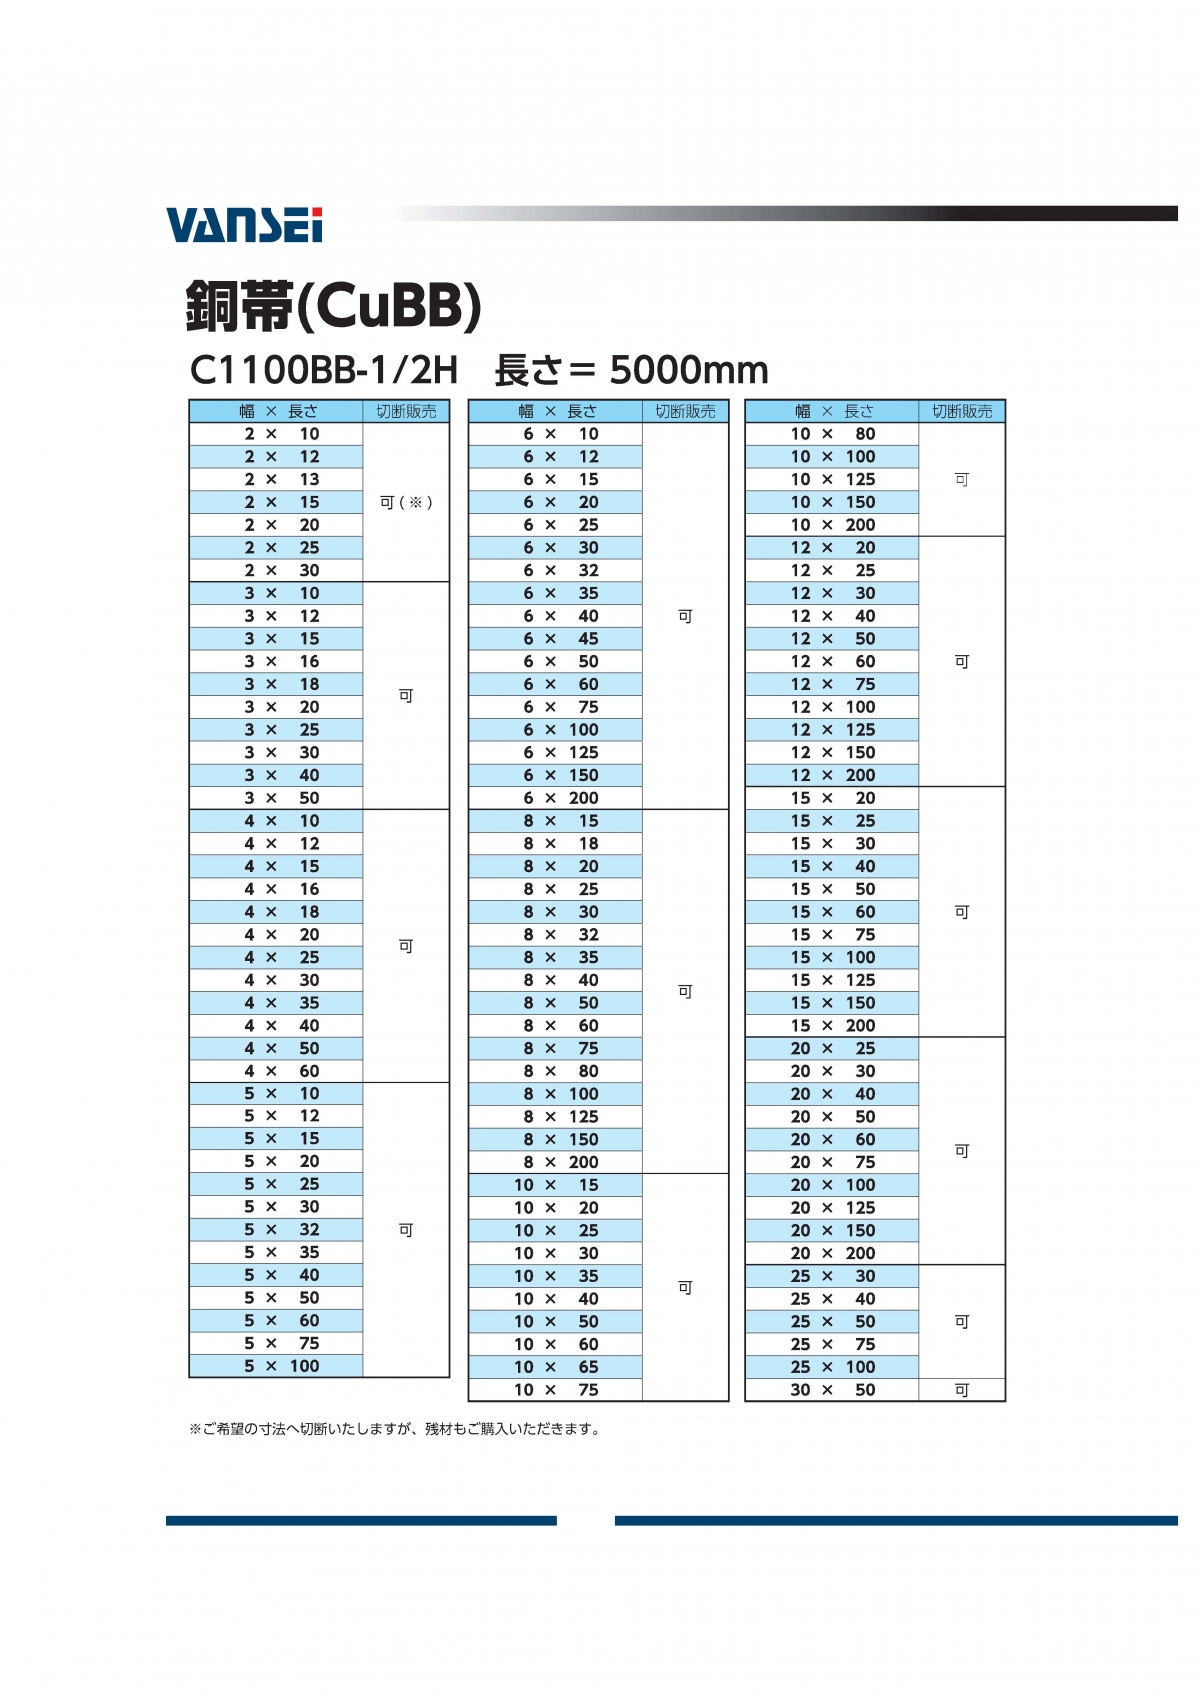 銅帯 ブスバー(C1100BB-1/2H)